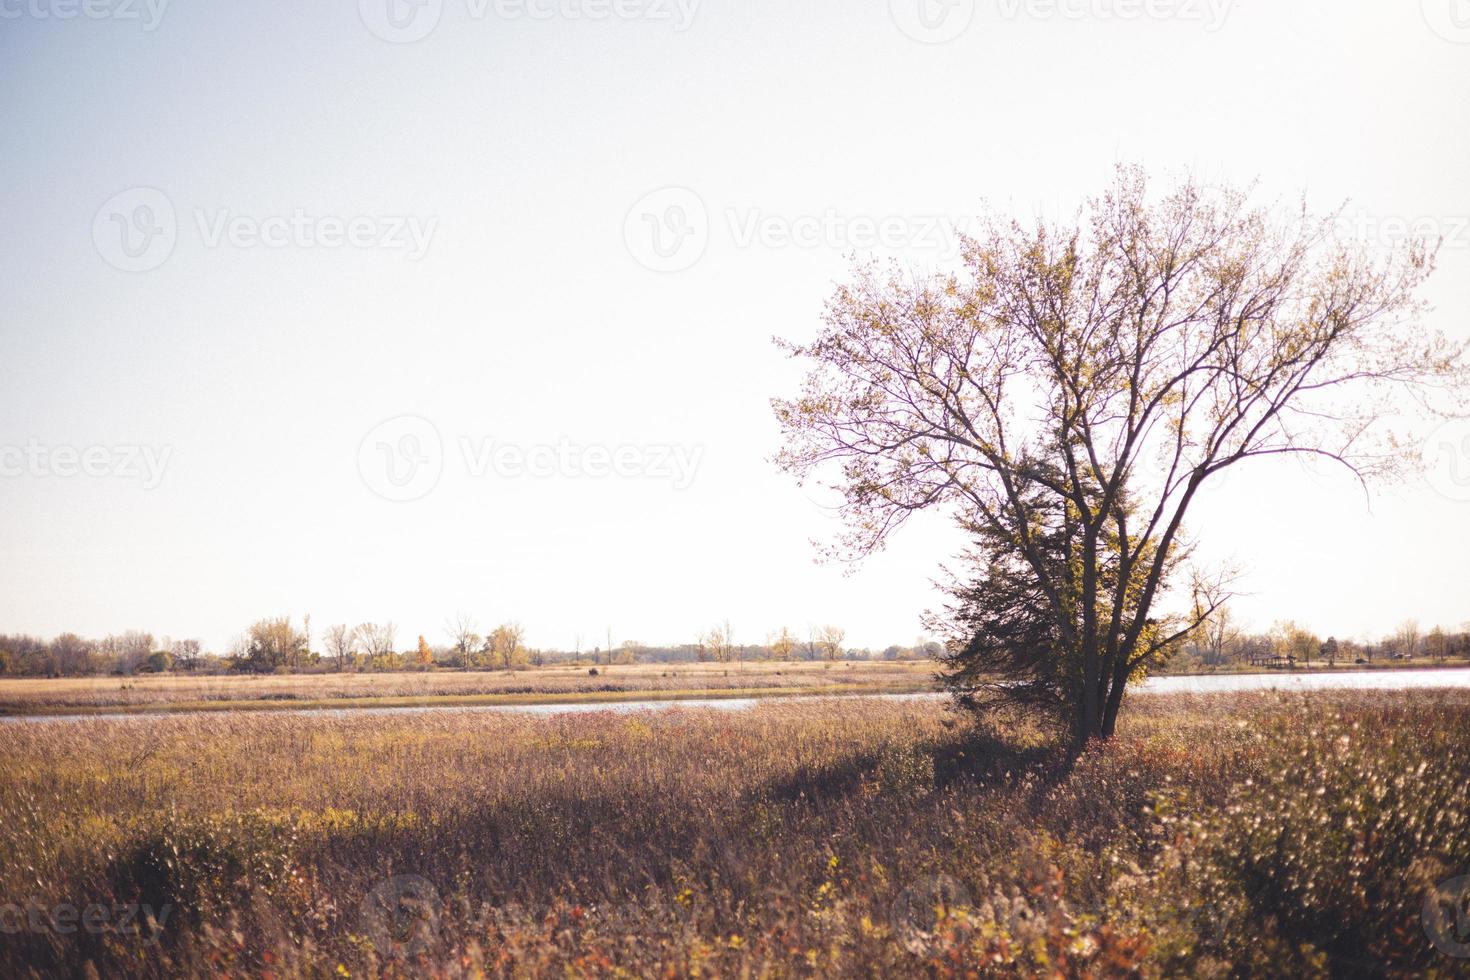 albero senza foglie e pino lungo la sponda del fiume nel Wisconsin occidentale. ombre proiettate sull'erba secca. cielo nuvoloso all'orizzonte. foto